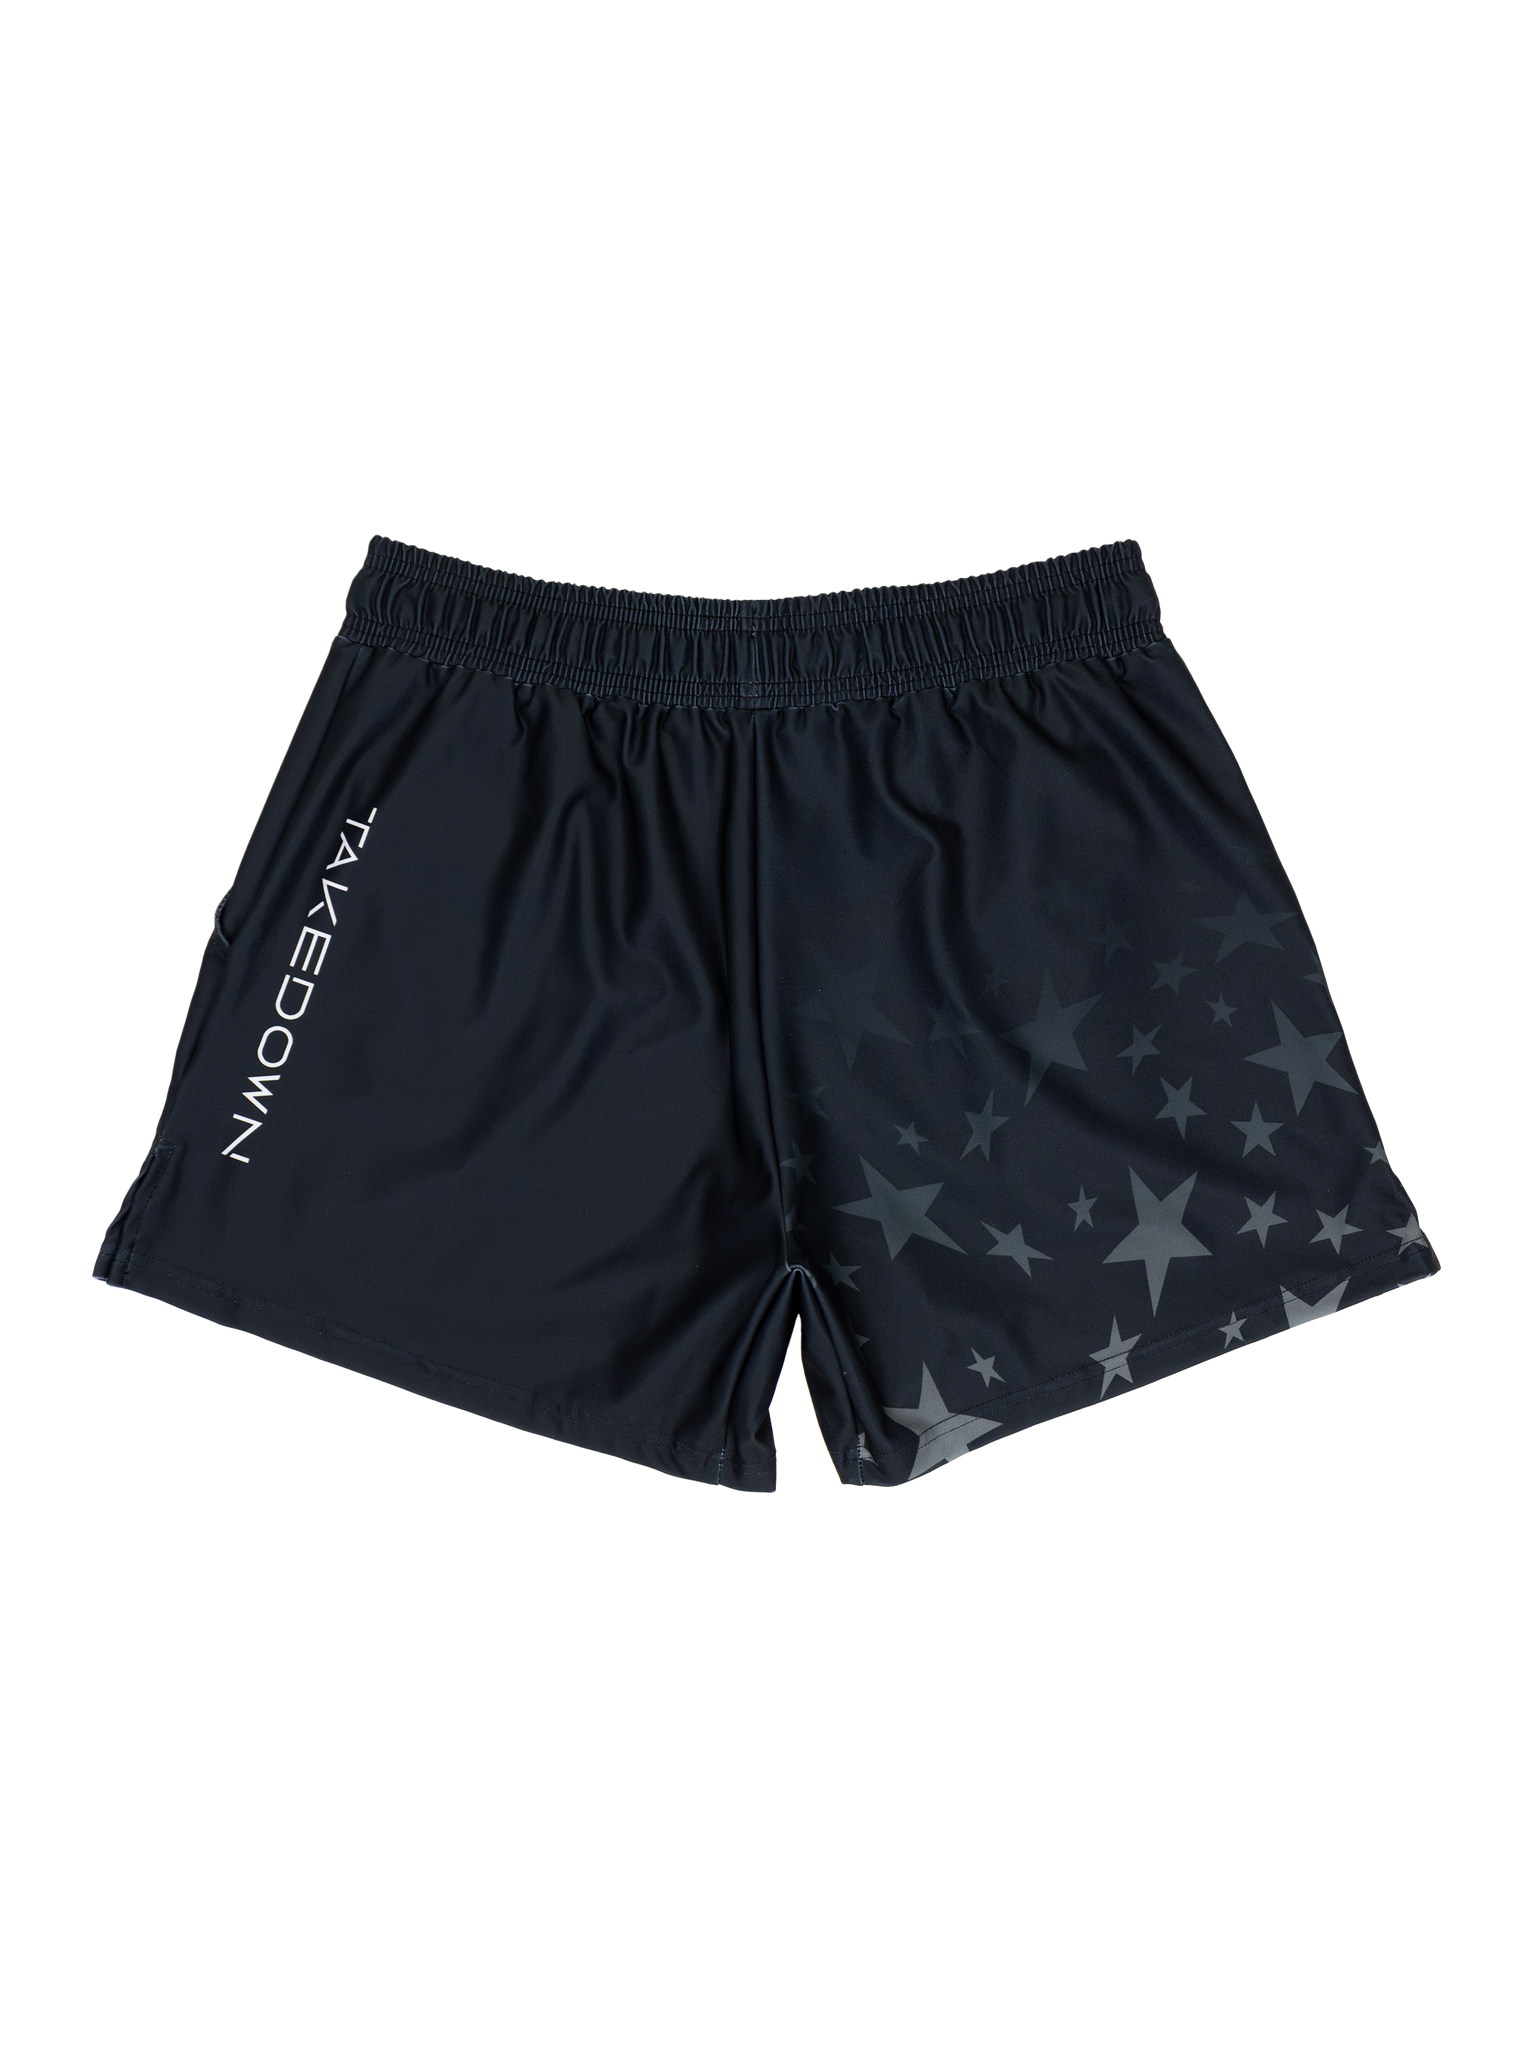 Gym Star Gym Shorts - Black (5"&7" Inseam)